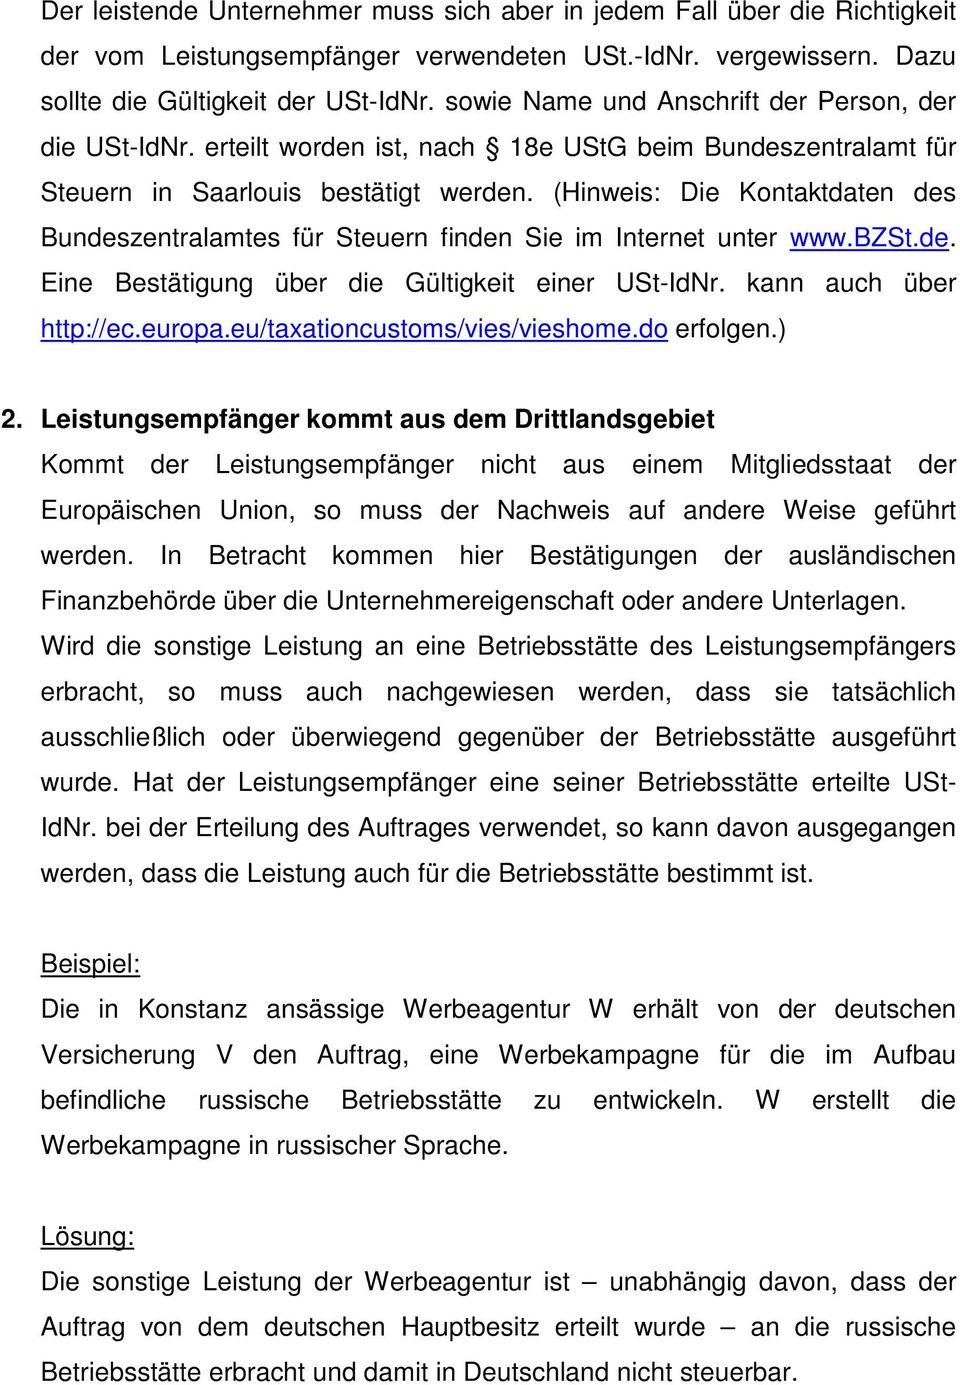 (Hinweis: Die Kontaktdaten des Bundeszentralamtes für Steuern finden Sie im Internet unter www.bzst.de. Eine Bestätigung über die Gültigkeit einer USt-IdNr. kann auch über http://ec.europa.